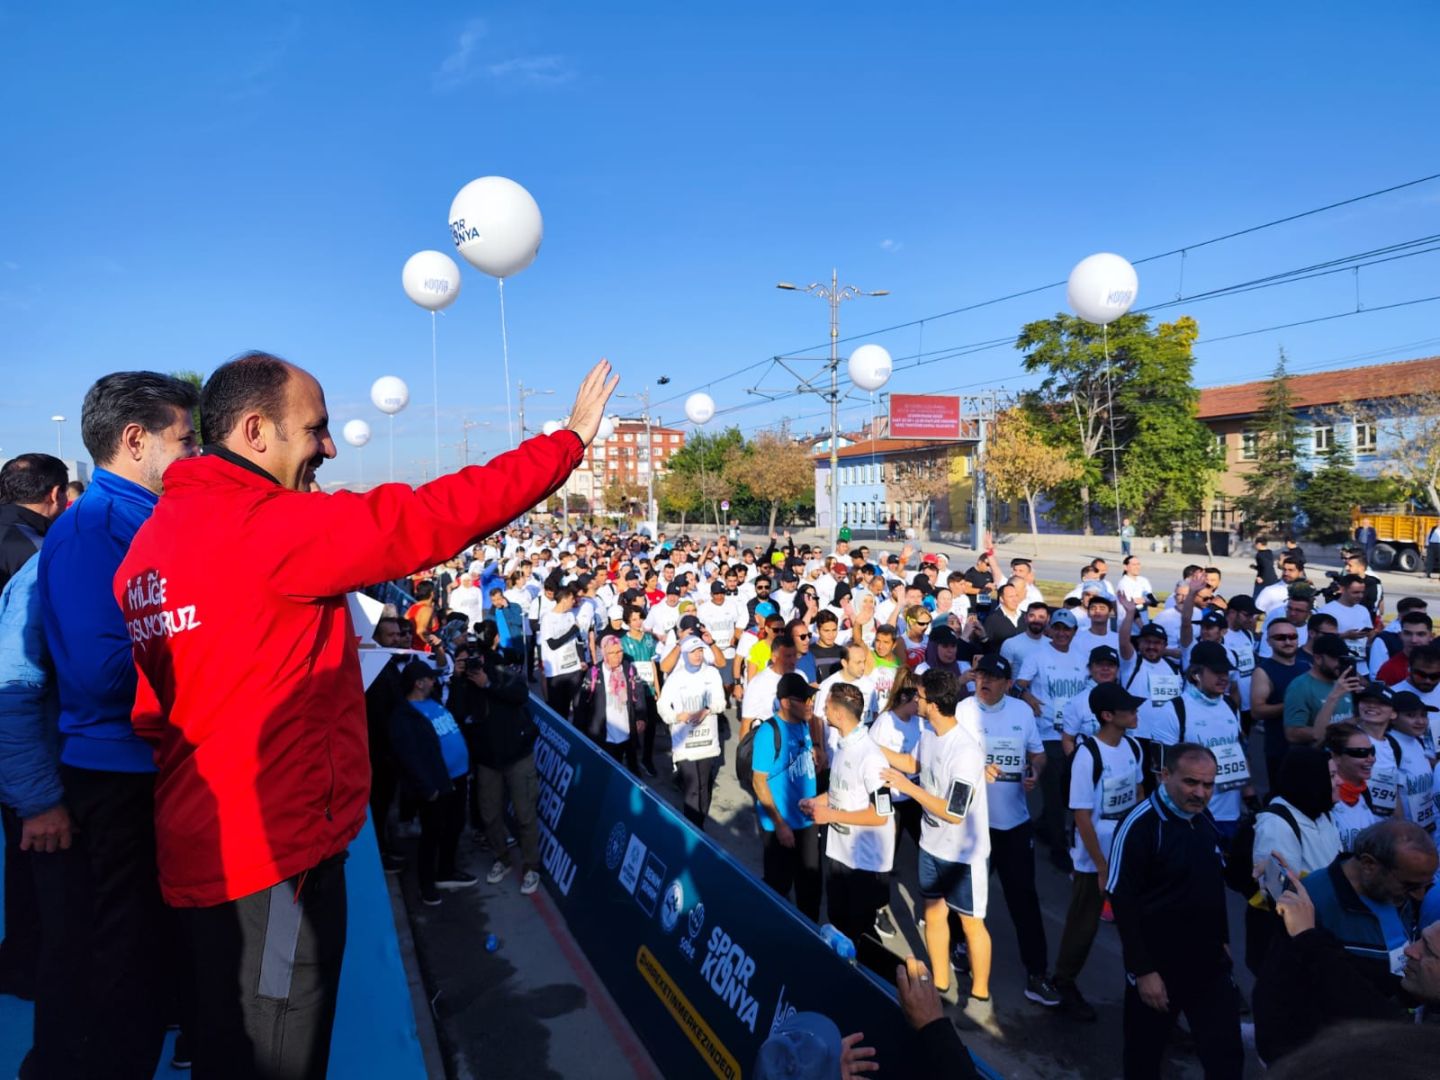 Başkan Altay Tüm Sporseverleri Uluslararası Konya Yarı Maratonu’na Kayıt Yaptırmaya Davet Etti